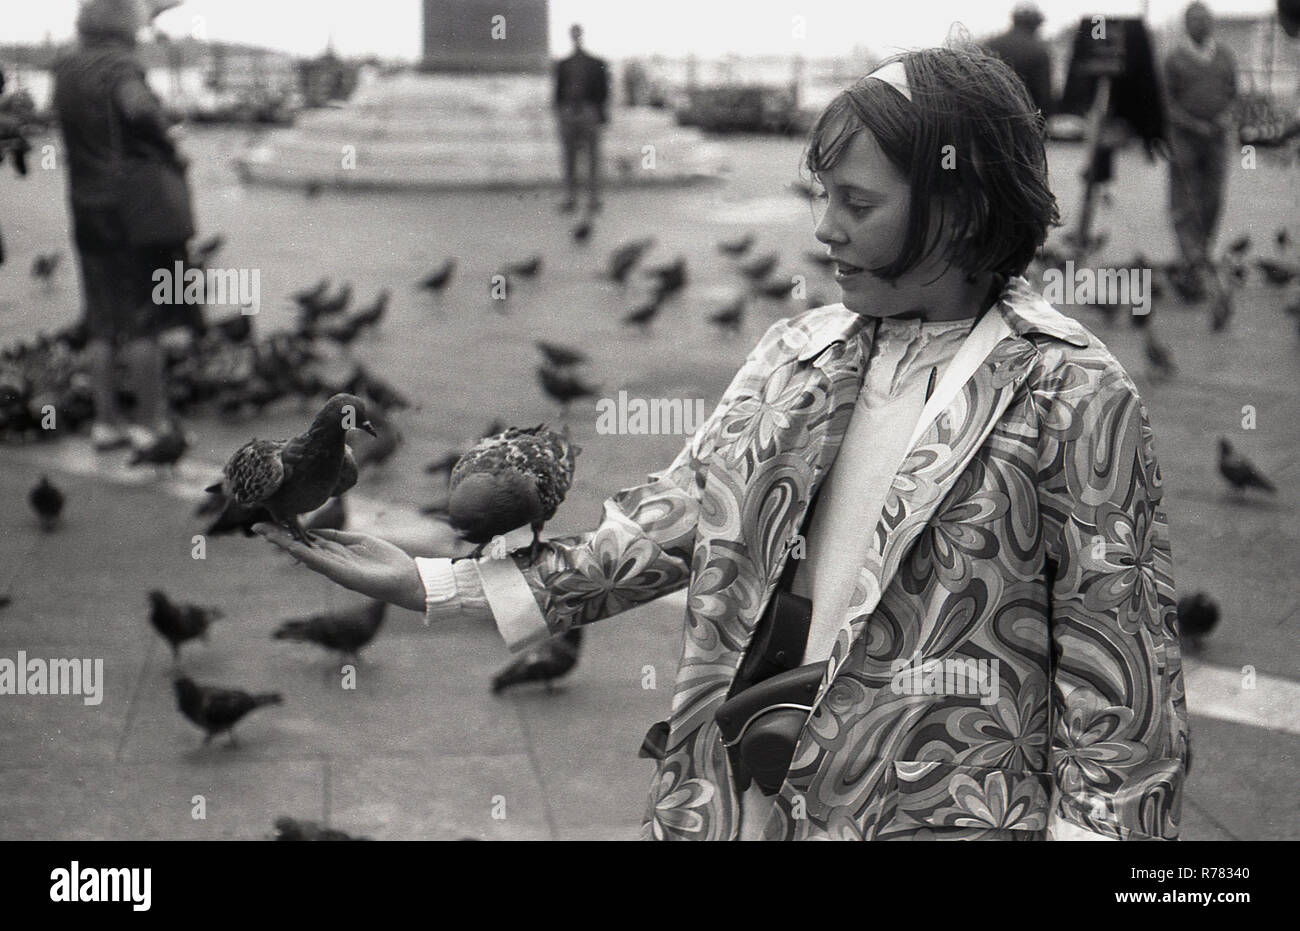 Siebziger Jahre, zwei Tauben auf dem Arm eines jungen Mädchens in einem blumengemusterten Mantel, der auf dem Markusplatz (Markusplatz) in Venedig, Italien, steht. Tauben waren schon immer eine beliebte Touristenattraktion in Venedig und konkurrierten einst mit Katzen als die traditionellen, wenn auch inoffiziellen Maskottchen der Lagunenstadt. Stockfoto